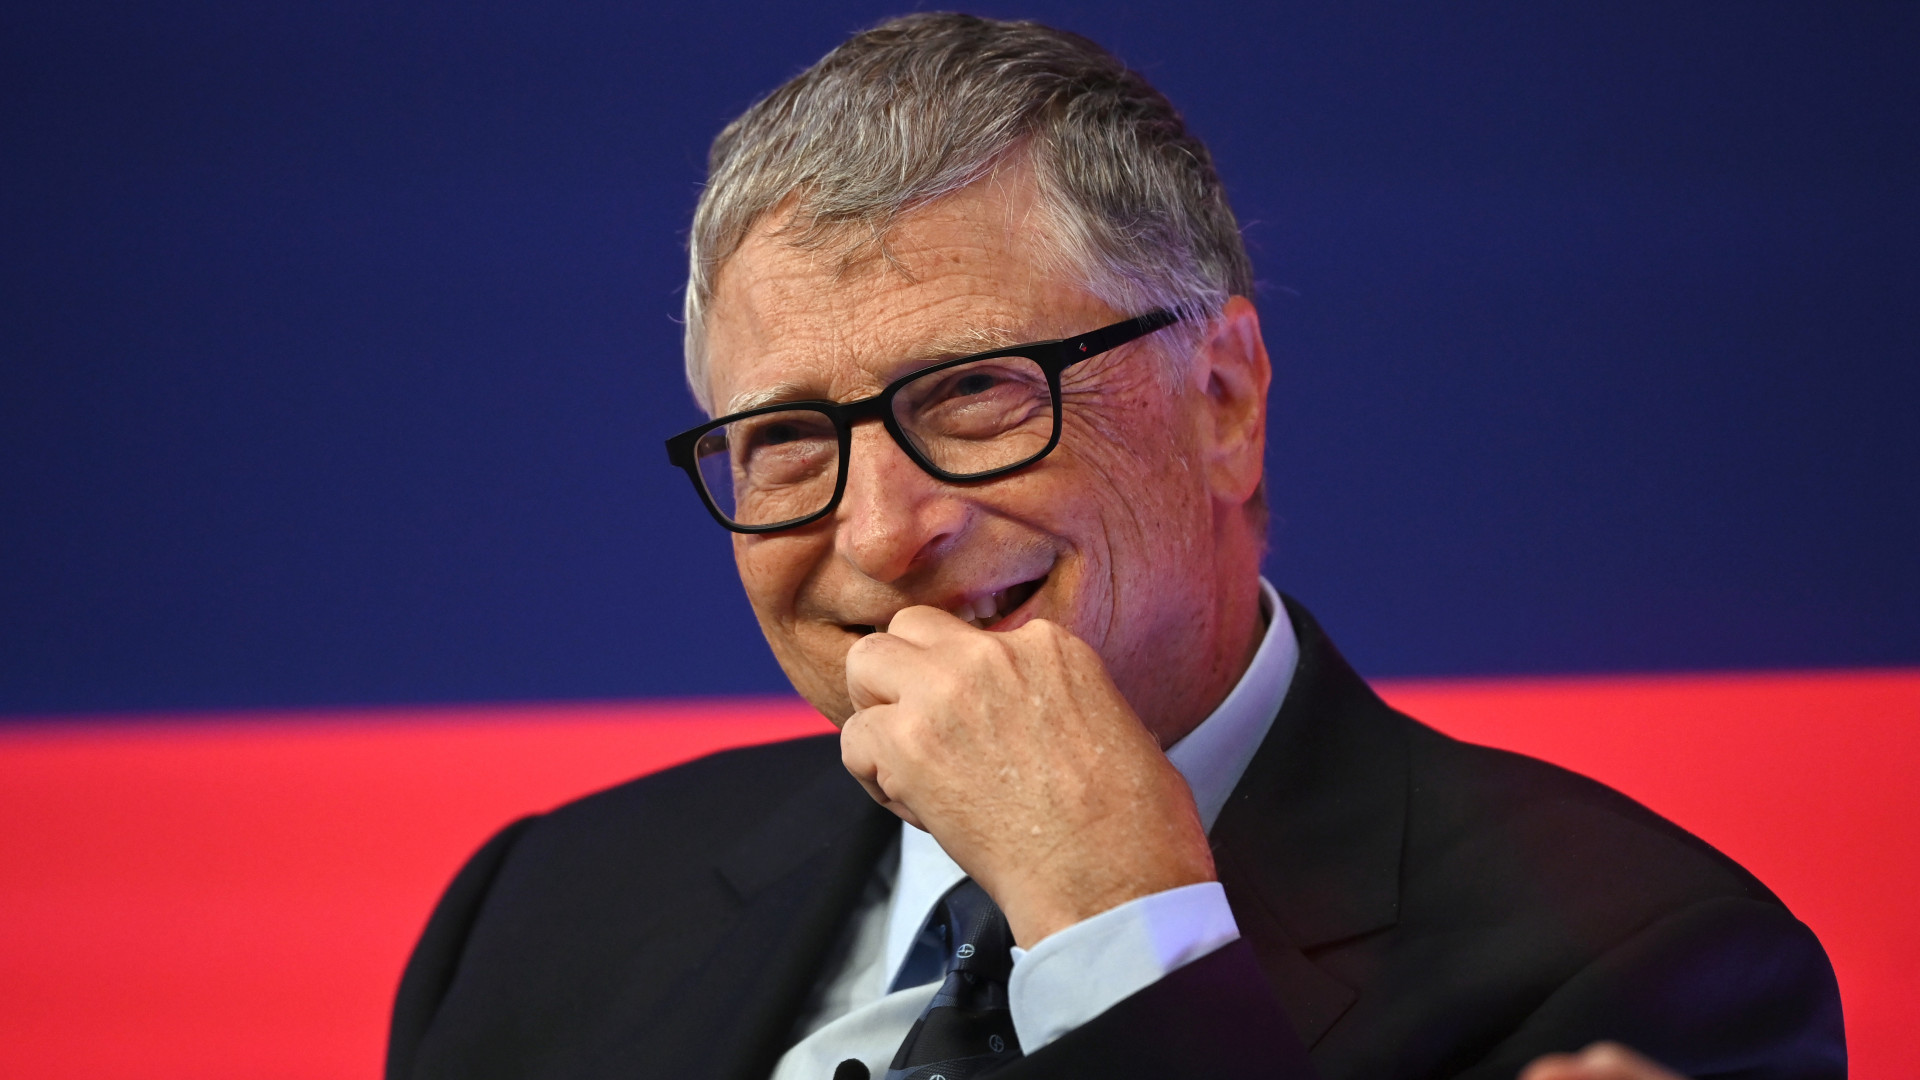 Hindi naisip ni Bill Gates: siya ay inakusahan ng pagpuksa sa sangkatauhan, ngayon ay ipinaliwanag niya ang karumal-dumal na pangungusap